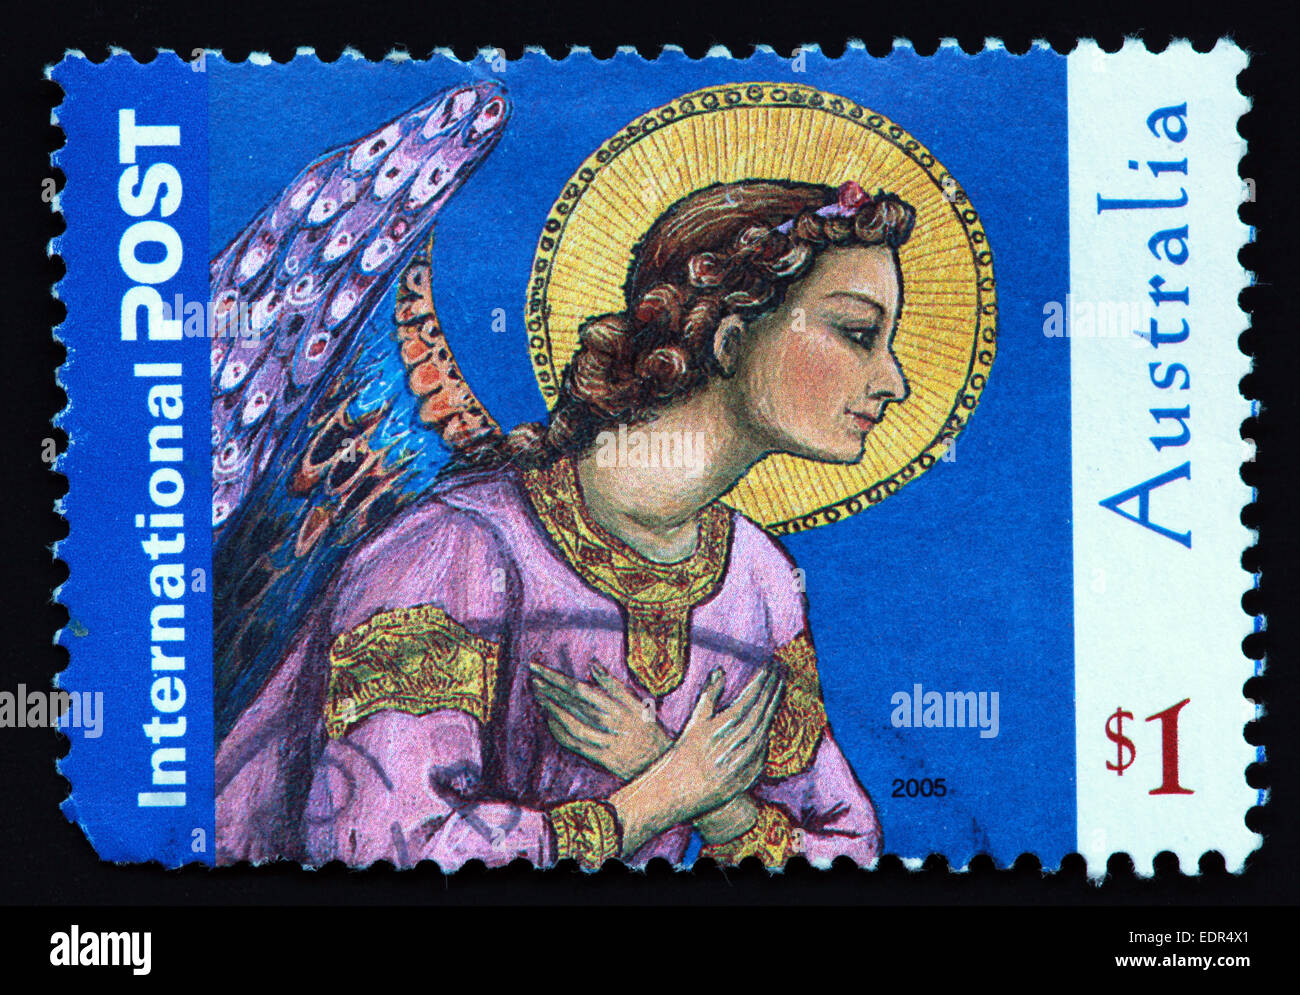 Verwendet und Poststempel Australien / Austrailian Stempel internationale Post $1 2005 Stockfoto